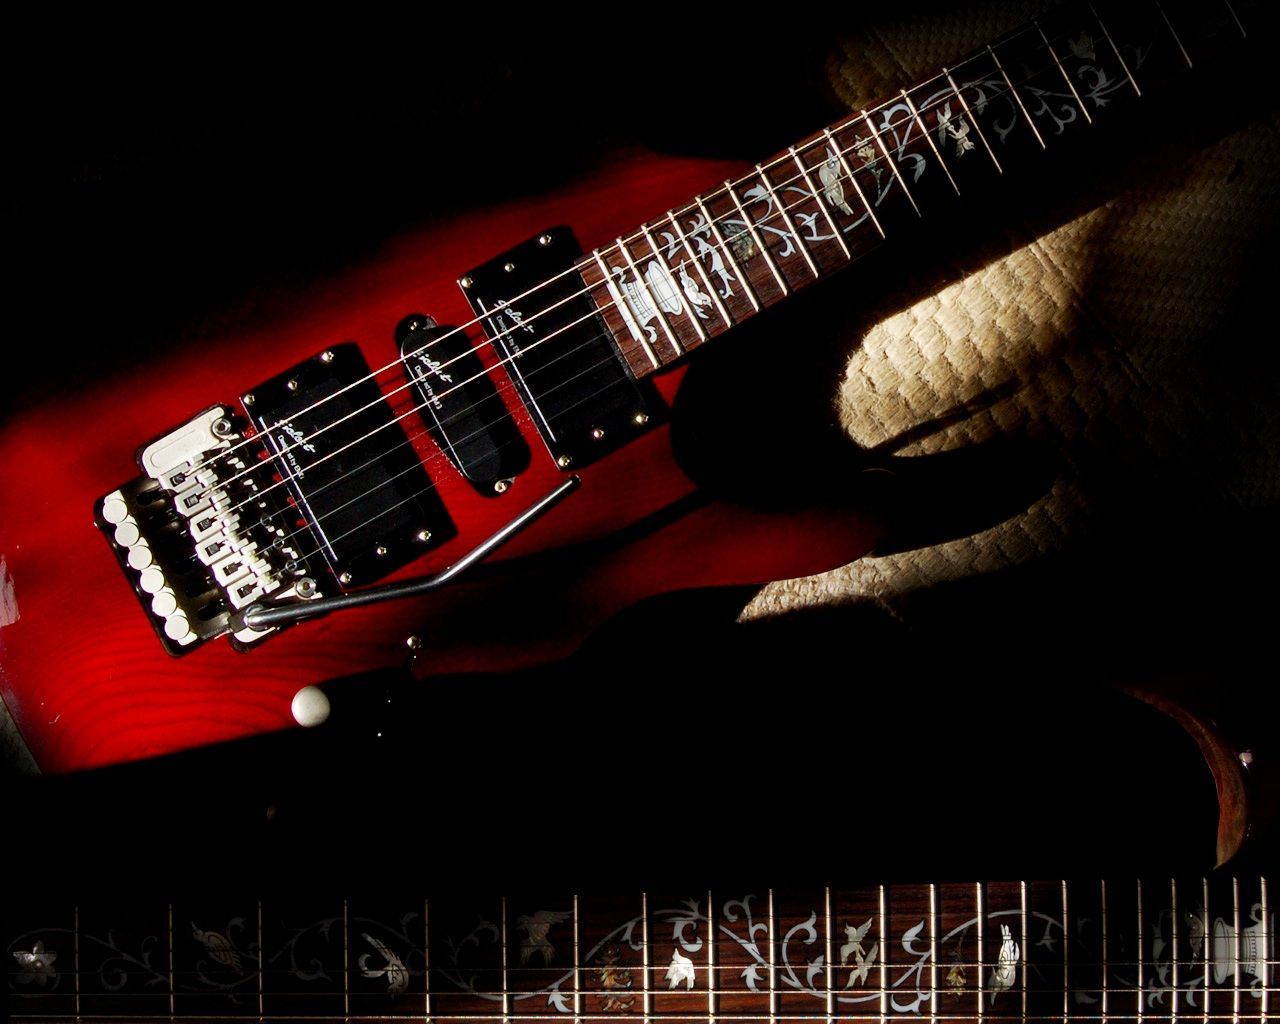 Gibson Guitar Wallpaper 9 photos of Gibson Guitar Wallpaper for ...